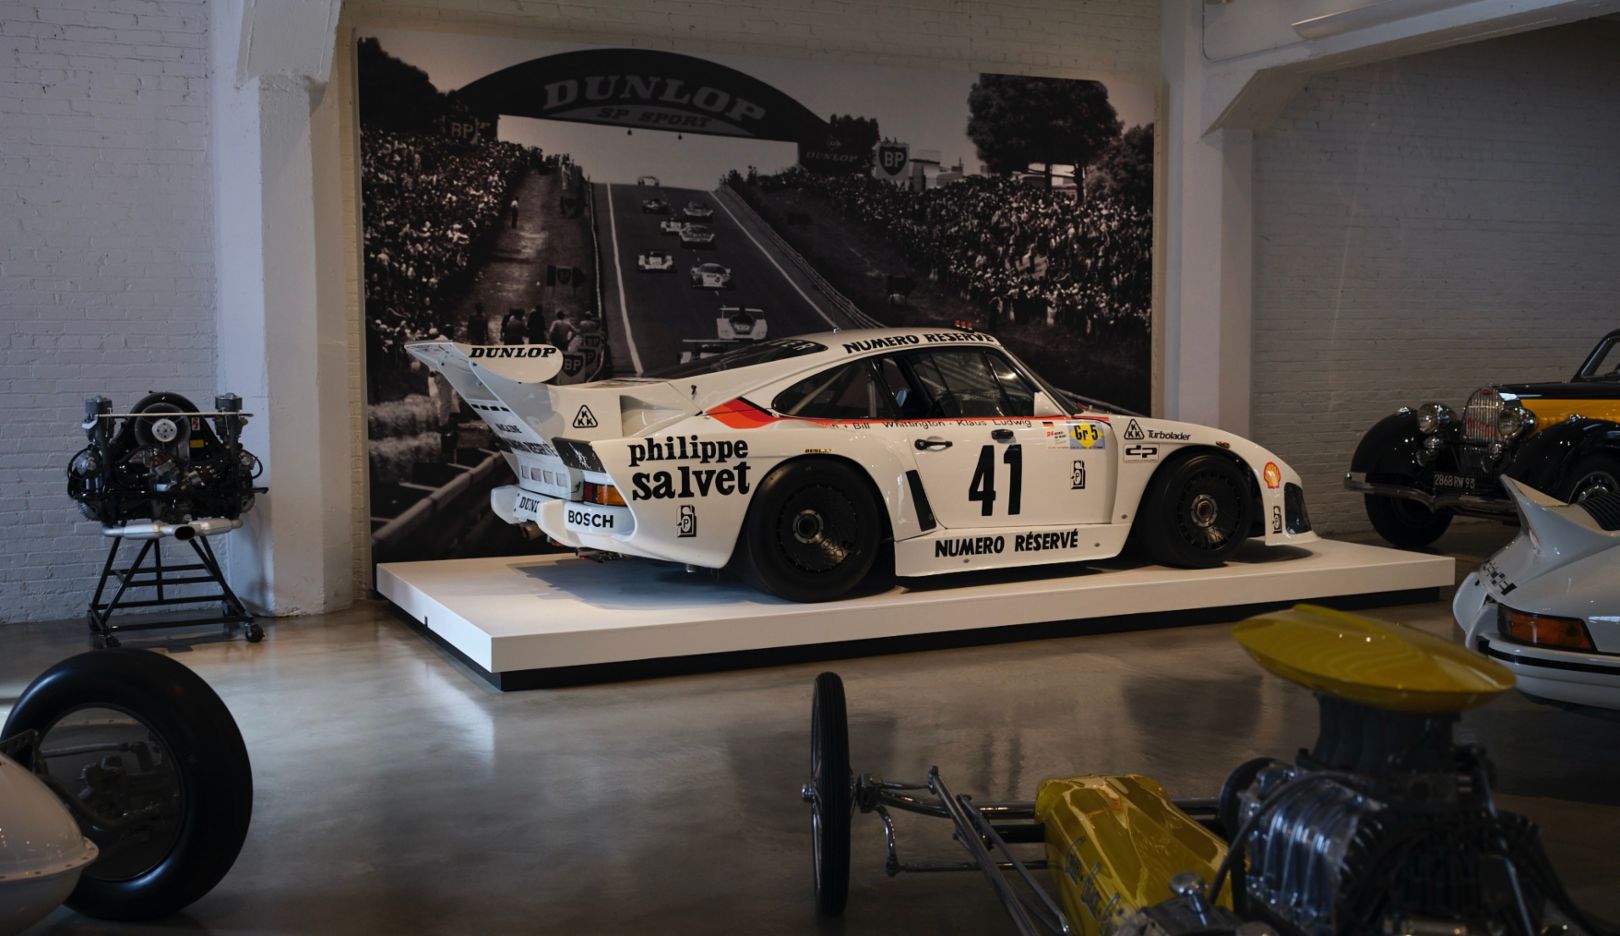 Entre emblemáticos dragsters americanos destaca un ganador de Le Mans: el Porsche 935 K3 de Kremer.